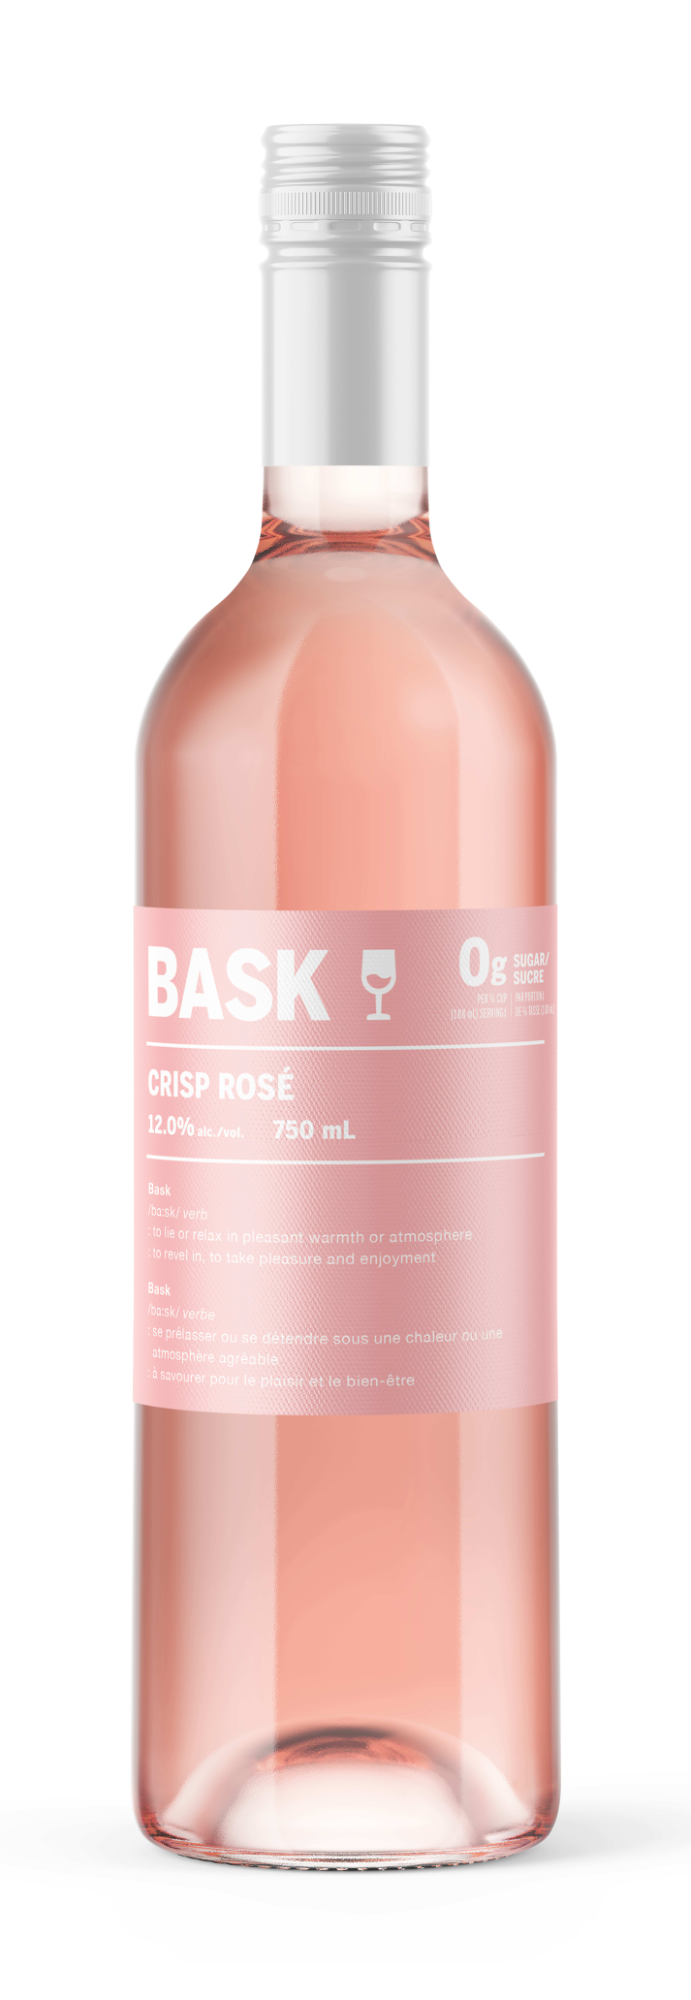 BASK CRISP ROSE 750ML